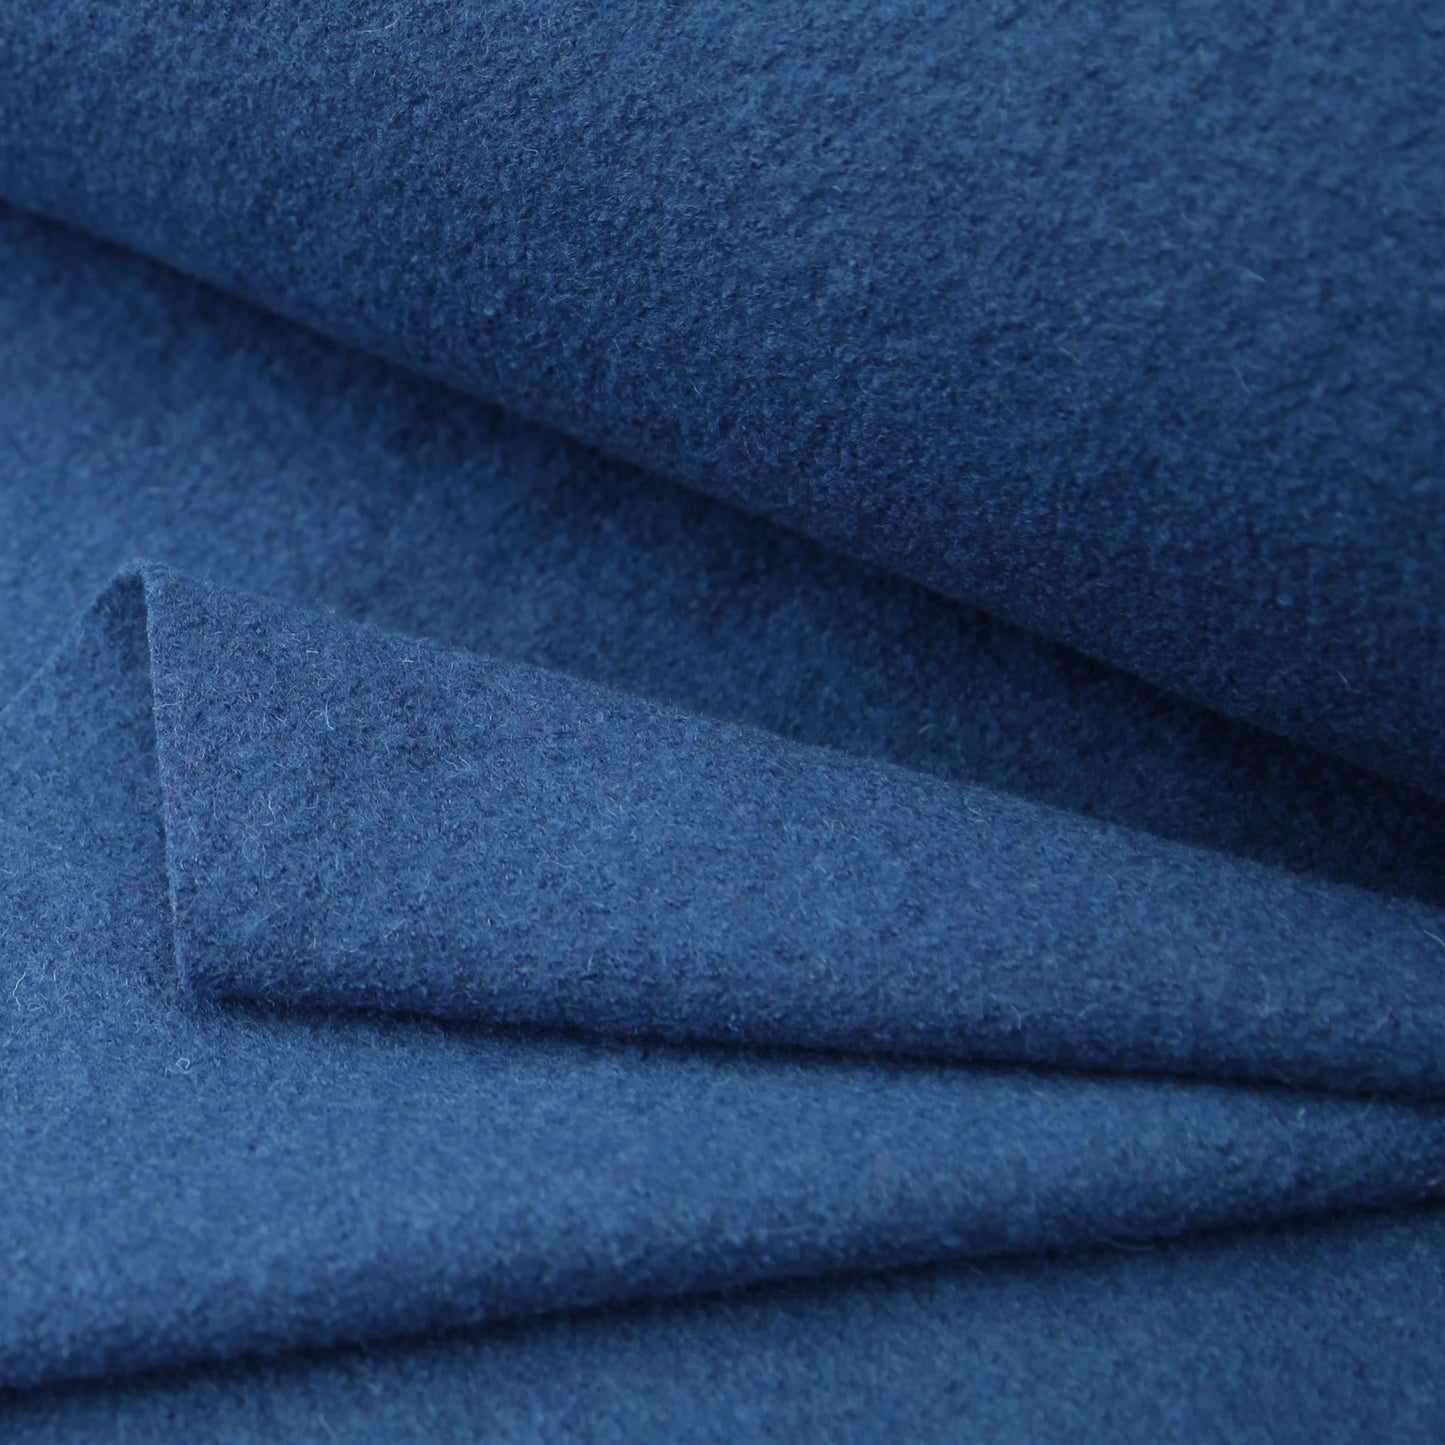 Kochwolle - Walkloden - Wolle - Trachten in der Farbe Marineblau / JeaWollstoffeStoffe Kudellino